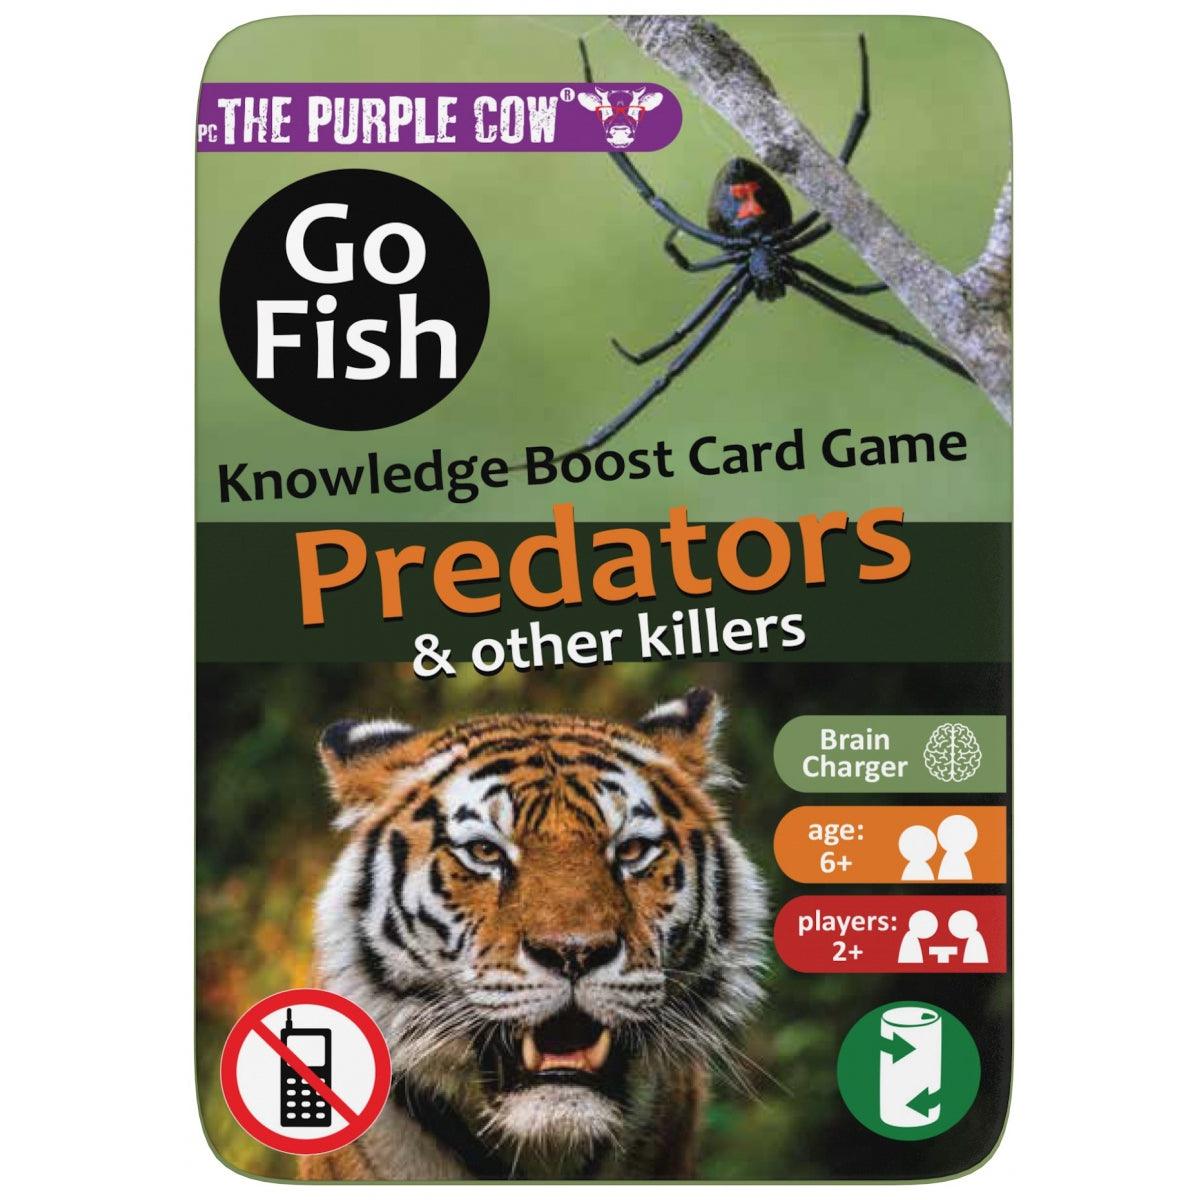 Ljubičasta krava: Idi ribljeg predatora putničke karte igre